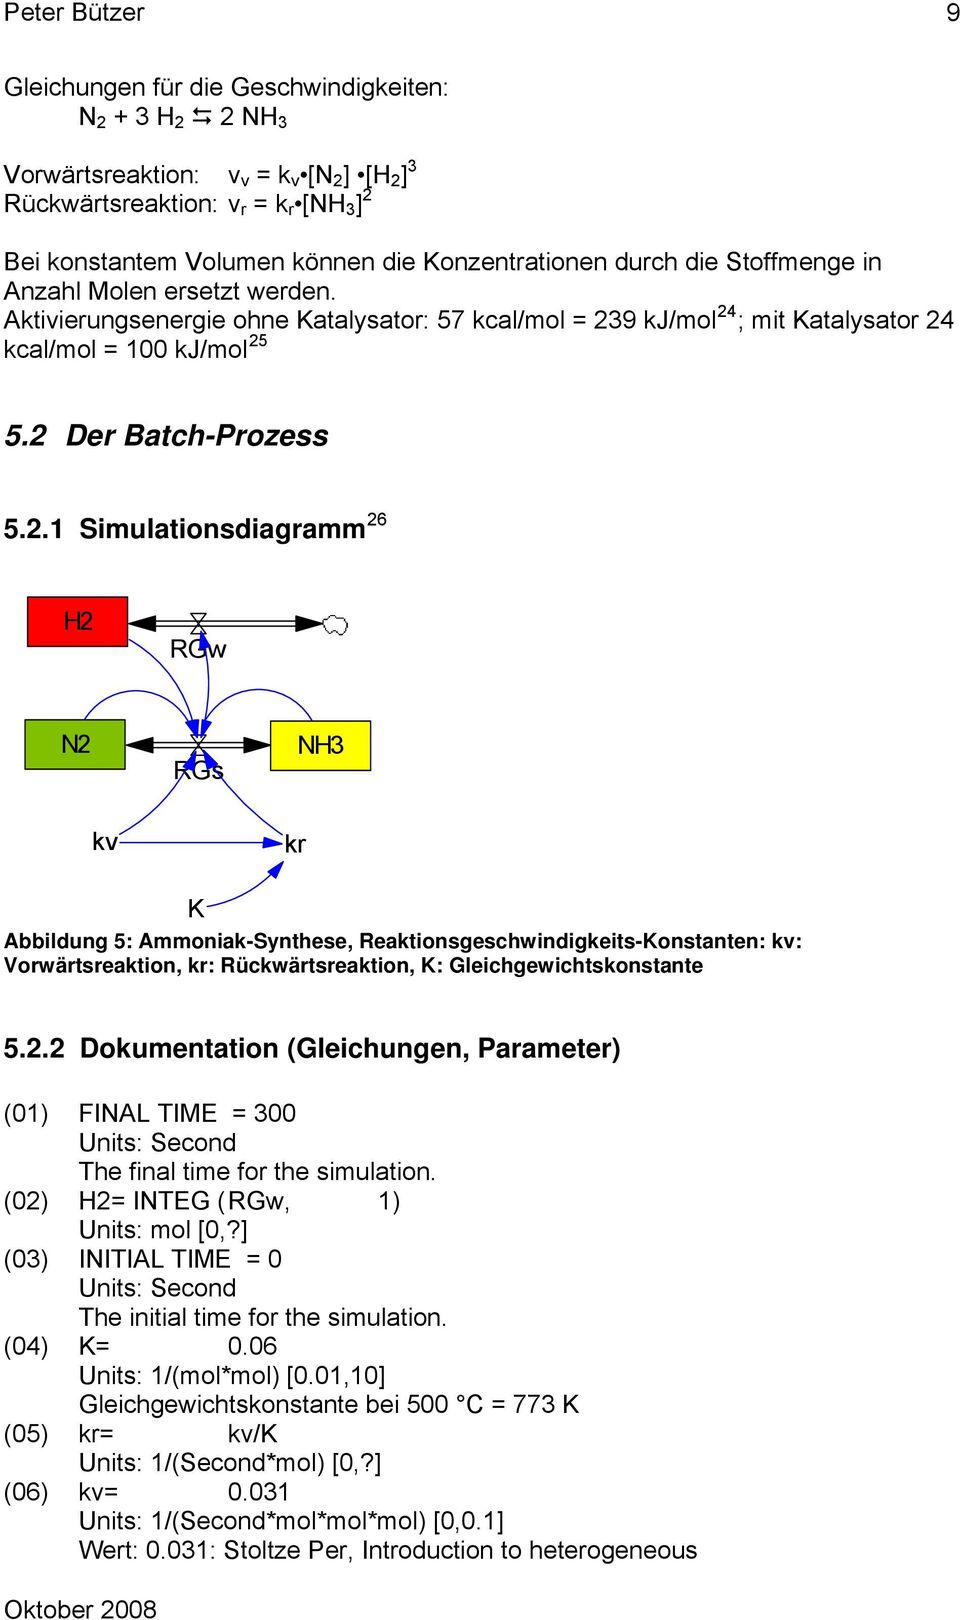 2 Der Batch-Prozess 5.2.1 Simulationsdiagramm 26 H2 RGw N2 RGs NH3 kv kr K Abbildung 5: Ammoniak-Synthese, Reaktionsgeschwindigkeits-Konstanten: kv: Vorwärtsreaktion, kr: Rückwärtsreaktion, K: Gleichgewichtskonstante 5.